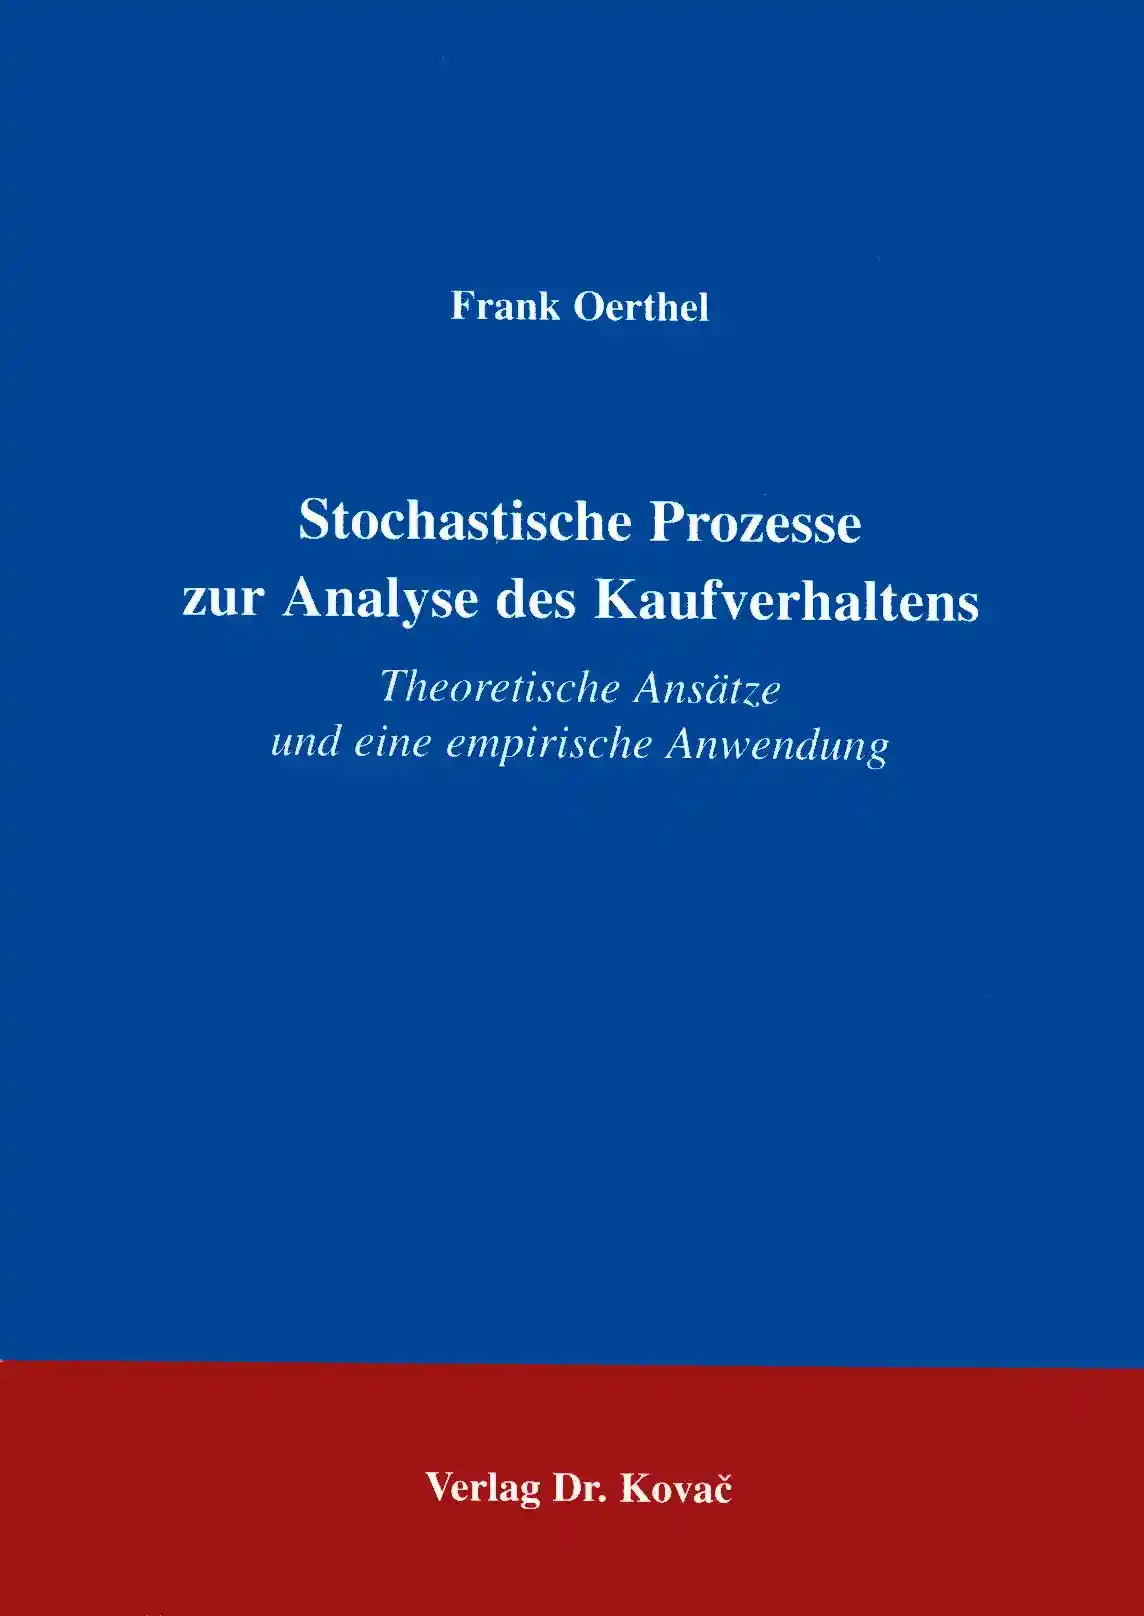  Dissertation: Stochastische Prozesse zur Analyse des Kaufverhaltens